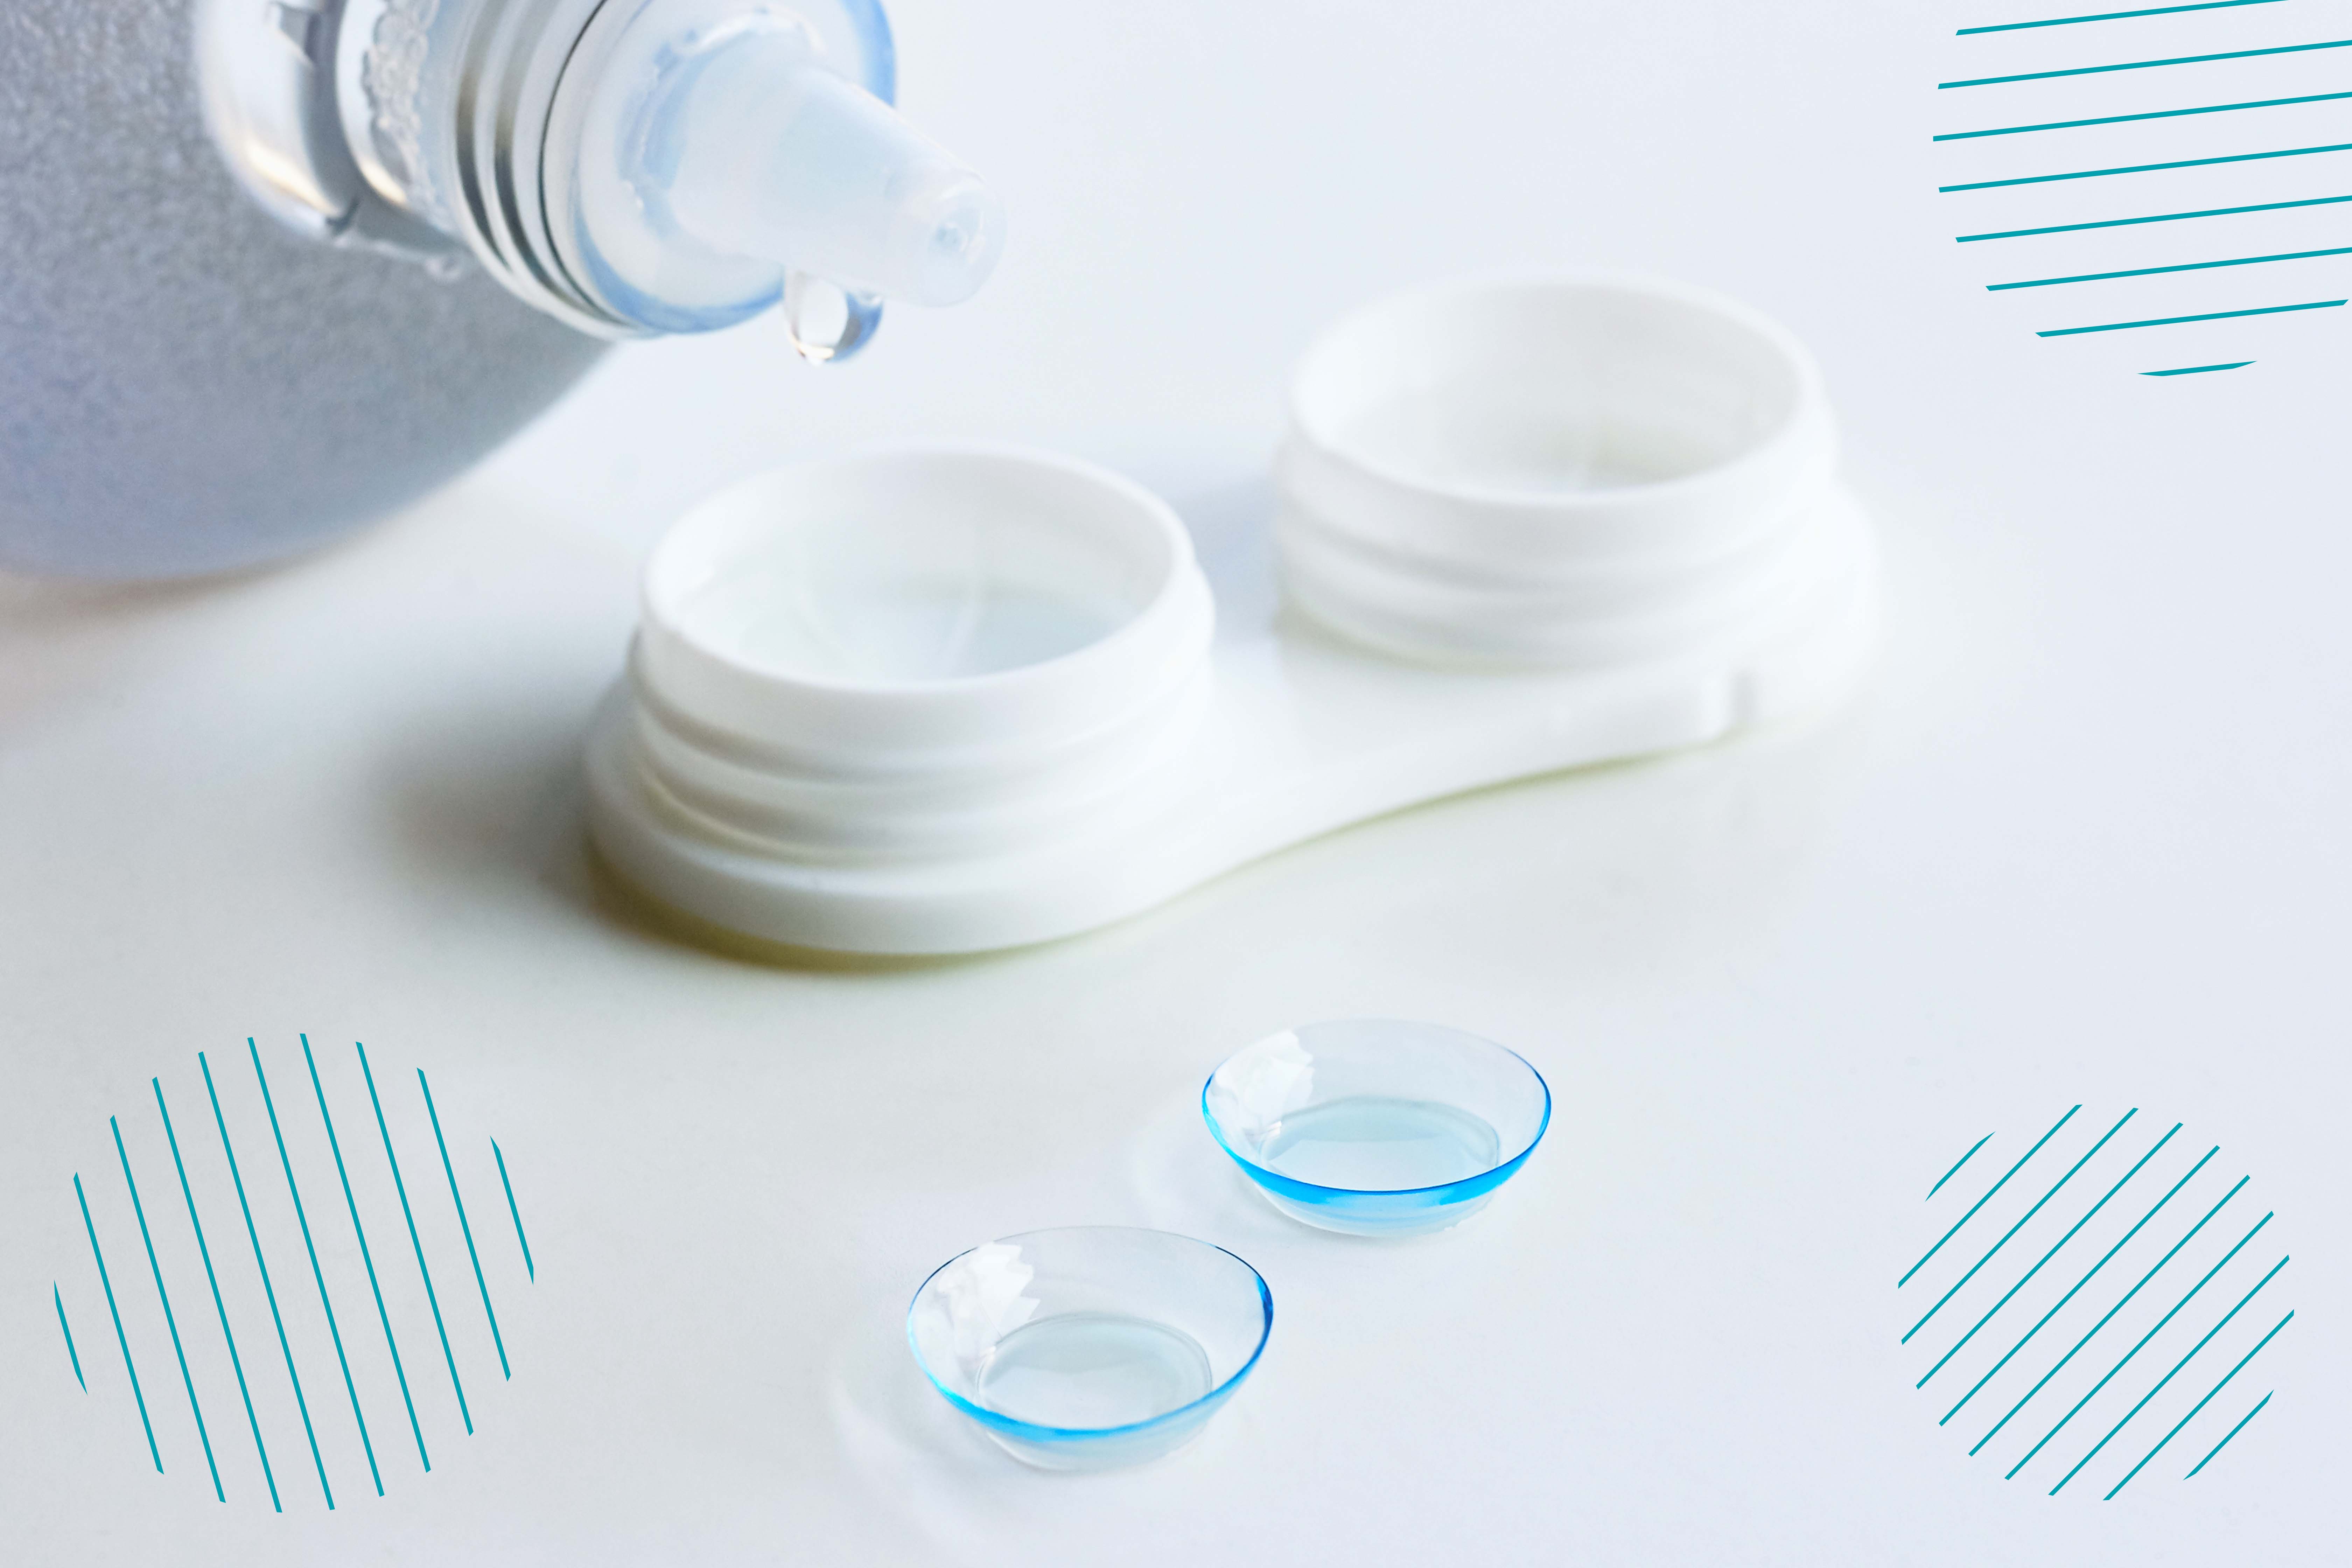 Dos lentes de contacto se encuentran colocados en una superficie, mientras se está a punto de agregar líquido desinfectante al estuche para conservarlos